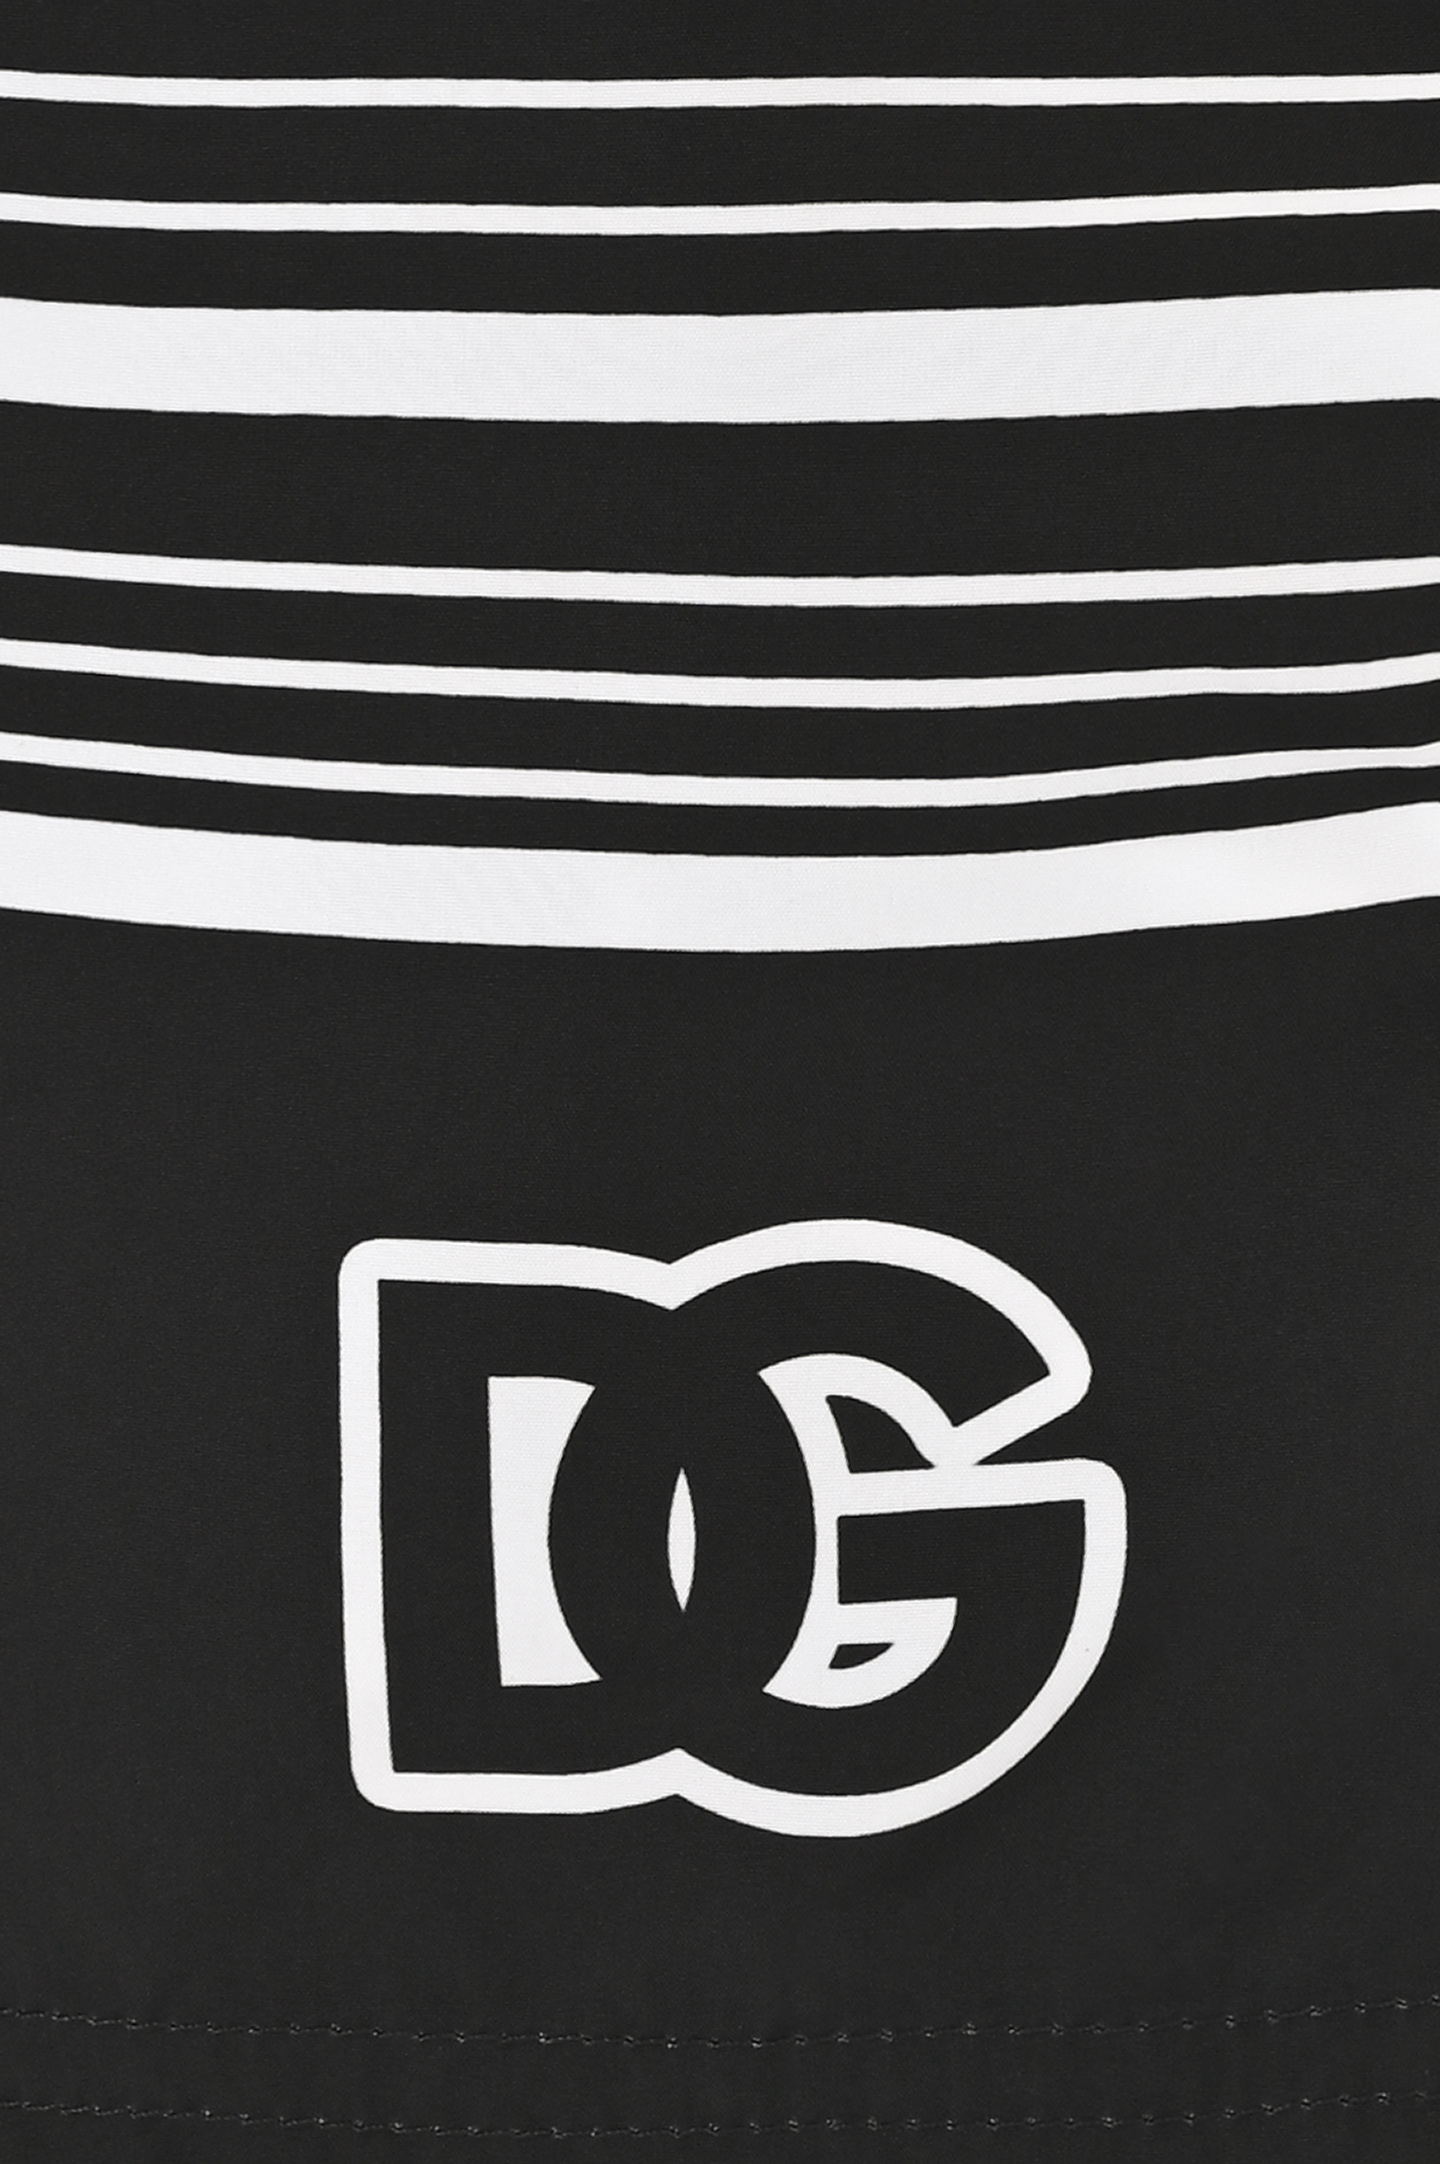 Шорты-плавки с логотипом DOLCE & GABBANA M4A06T FIM35, цвет: Черно-белый, Мужской